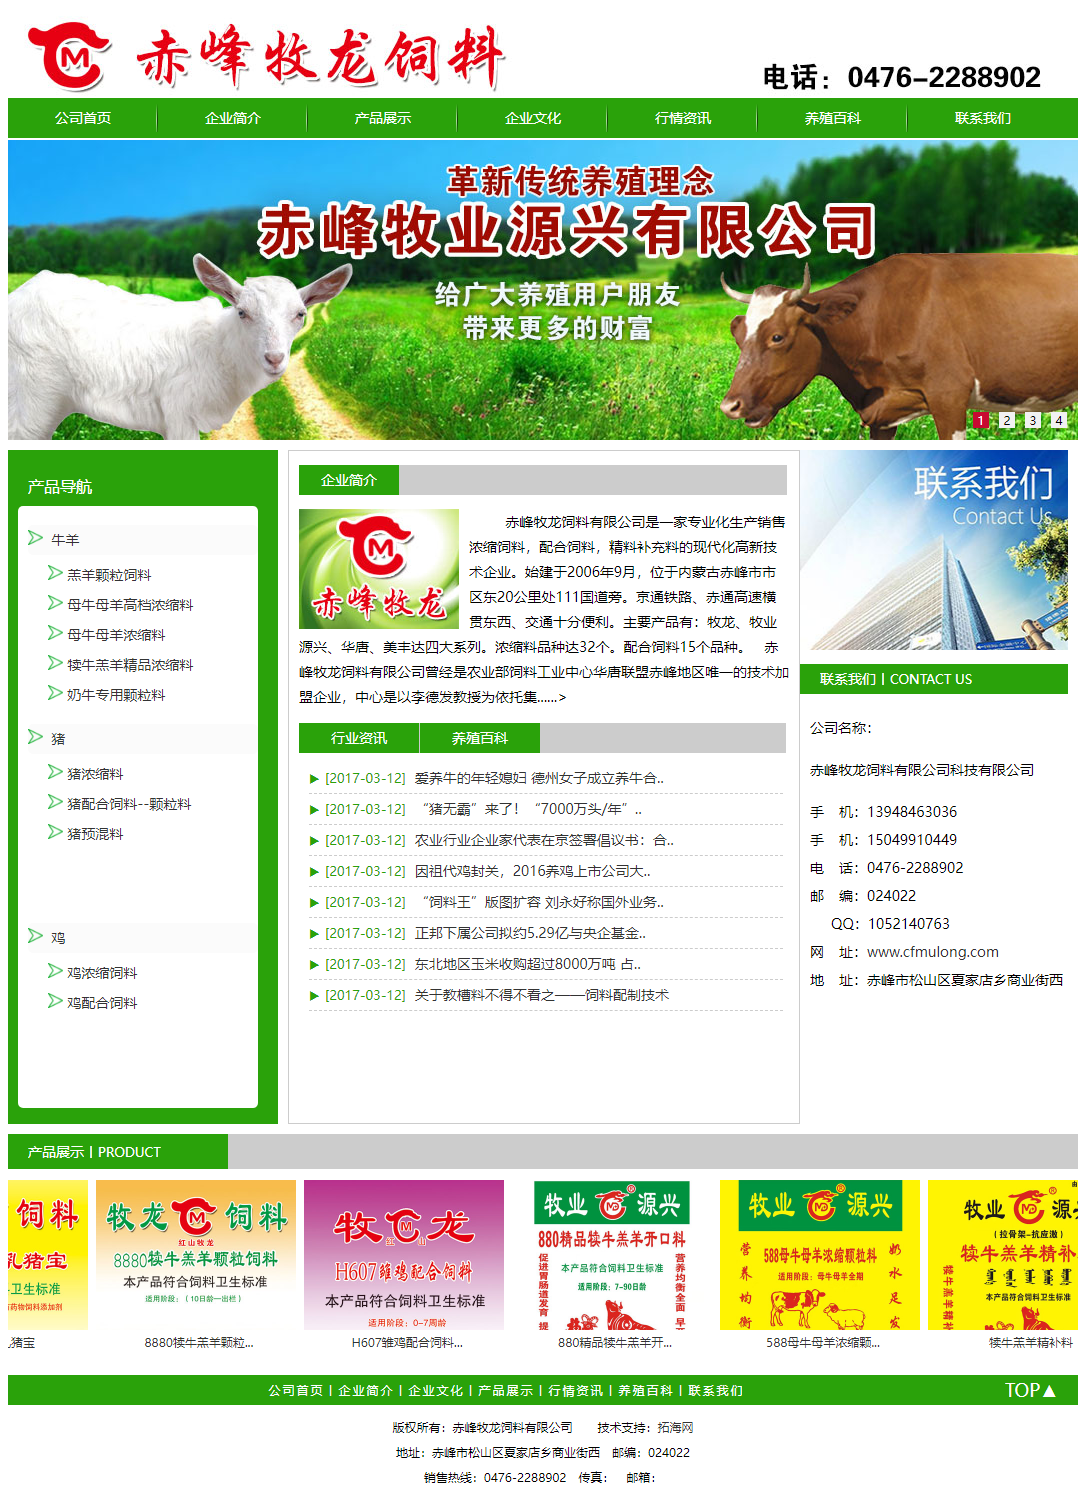 赤峰牧龙饲料有限公司网站案例